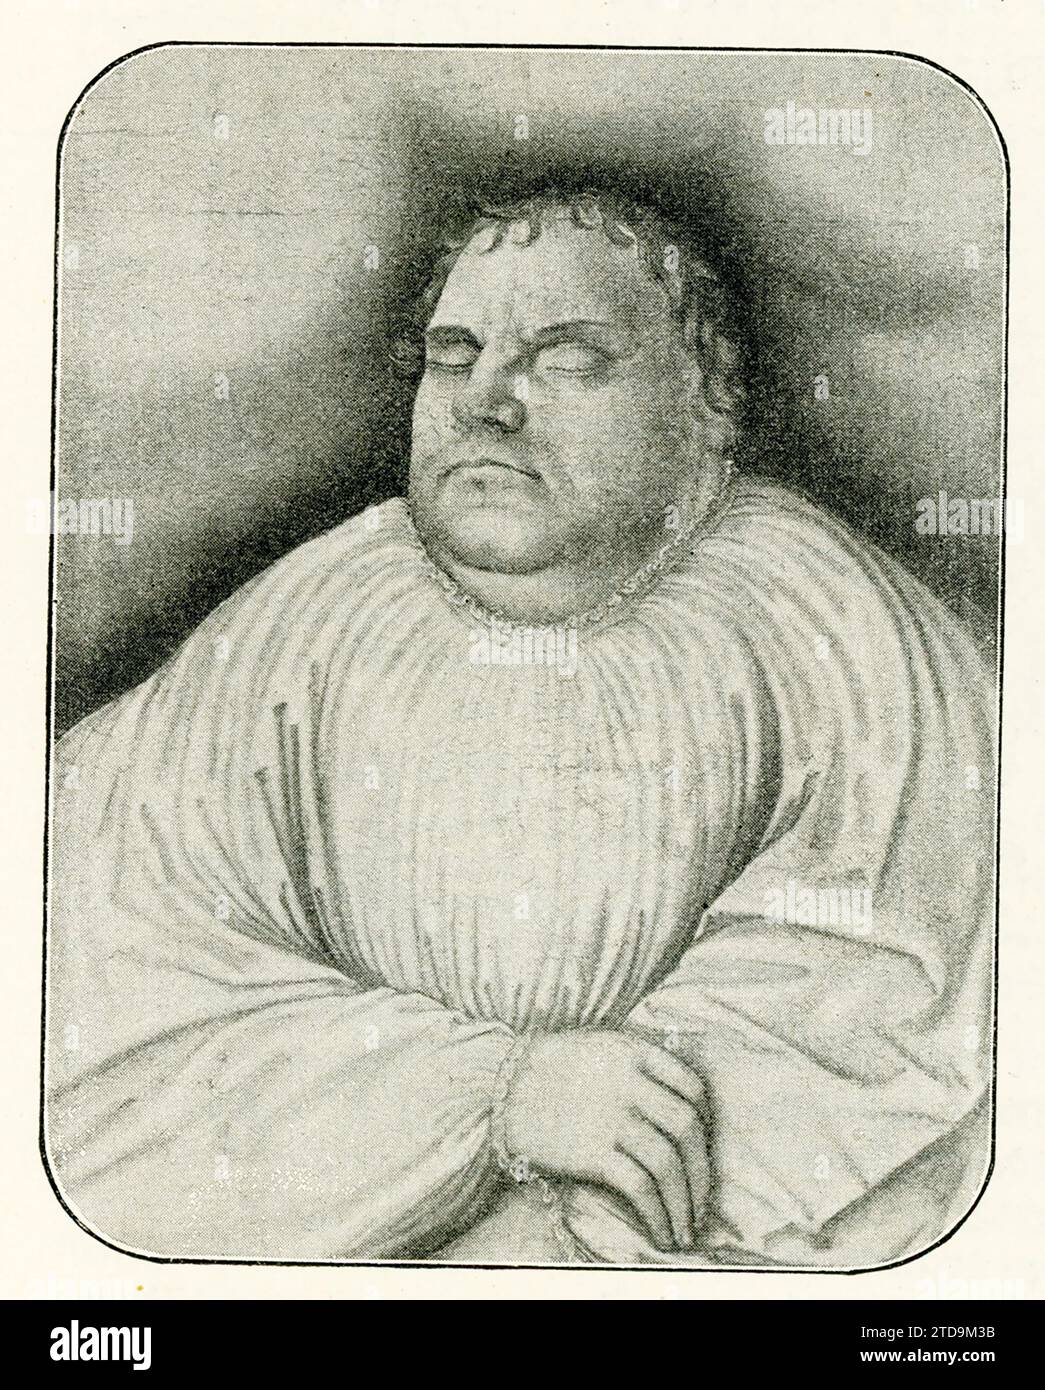 Questa immagine mostra il dipinto di Lucas Cranach il Vecchio di Martin Lutero sul suo letto di morte. Martin Lutero era un prete tedesco, la figura principale della riforma protestante, e le sue credenze teologiche costituiscono la base del luteranesimo. Lutero fu ordinato sacerdote nel 1507 e morì nel 1546. Lucas Cranach il Vecchio (morto nel 1553) è stato un pittore e incisore tedesco del Rinascimento. Fu pittore di corte presso gli elettori di Sassonia per la maggior parte della sua carriera ed è noto per i suoi ritratti dei leader della riforma. Foto Stock